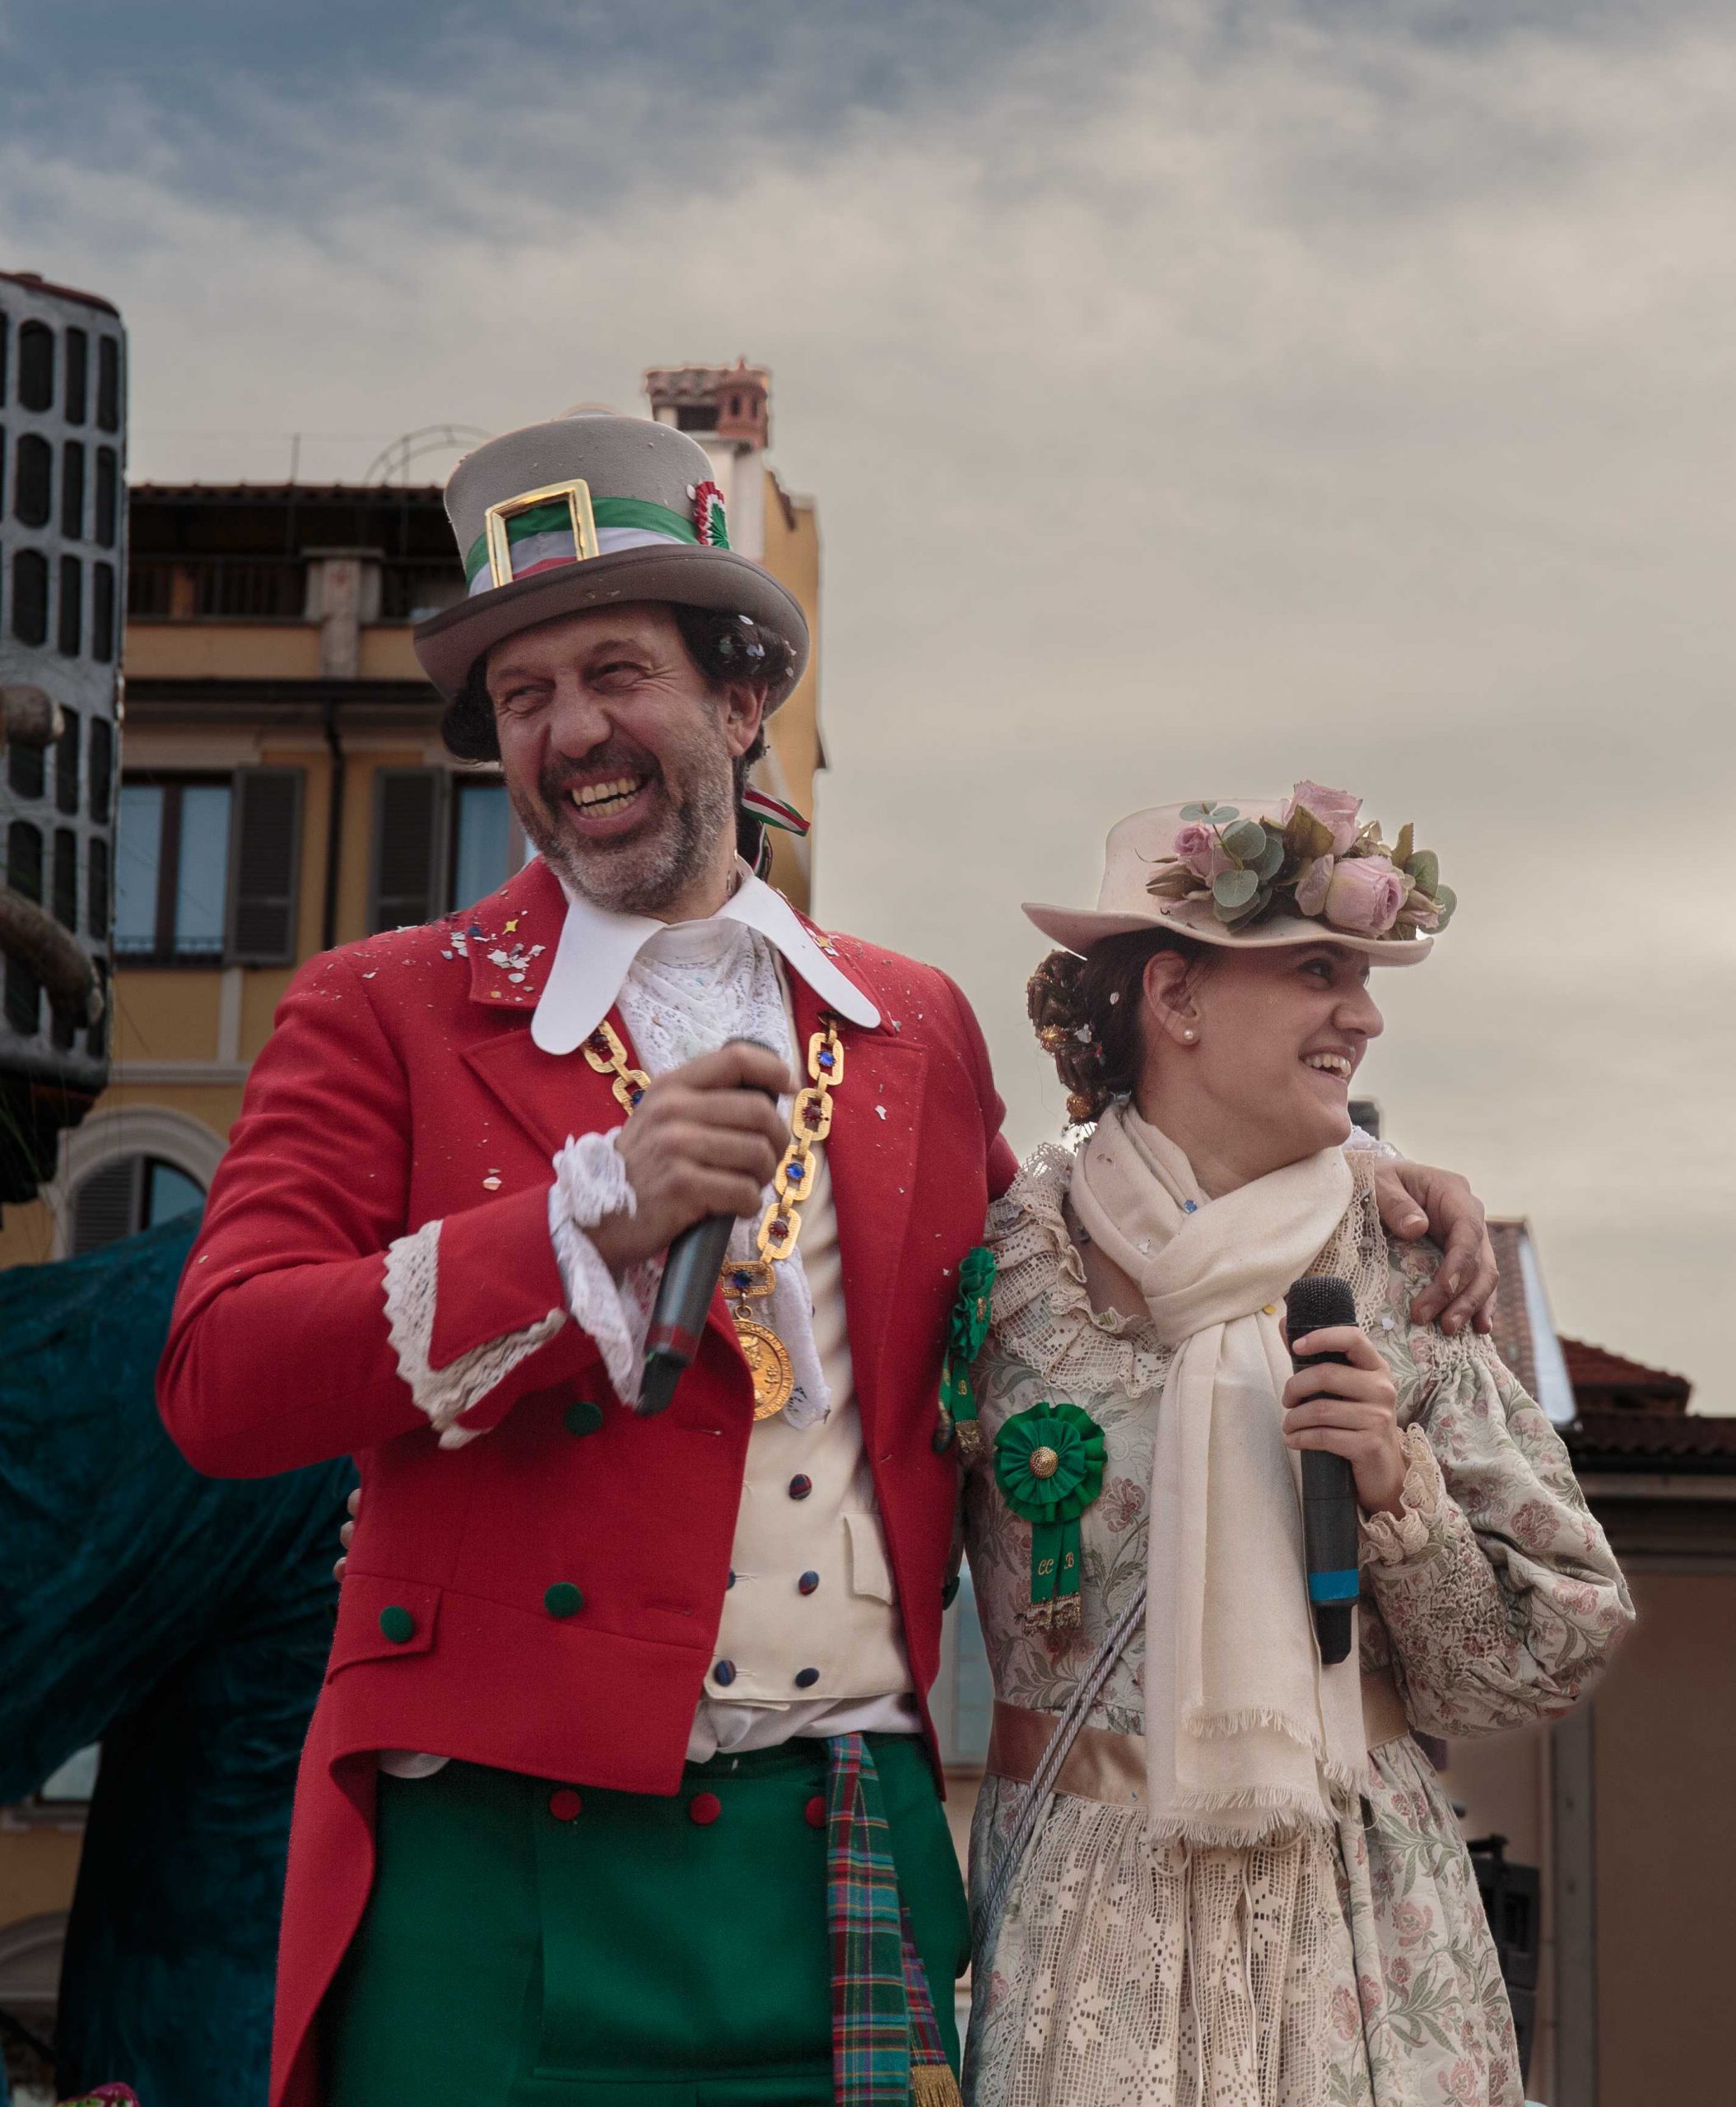 TRIONFO DI COLORI – Le immagini dal Carnevale di Borgosesia – Fotogallery targata G. Gozzi